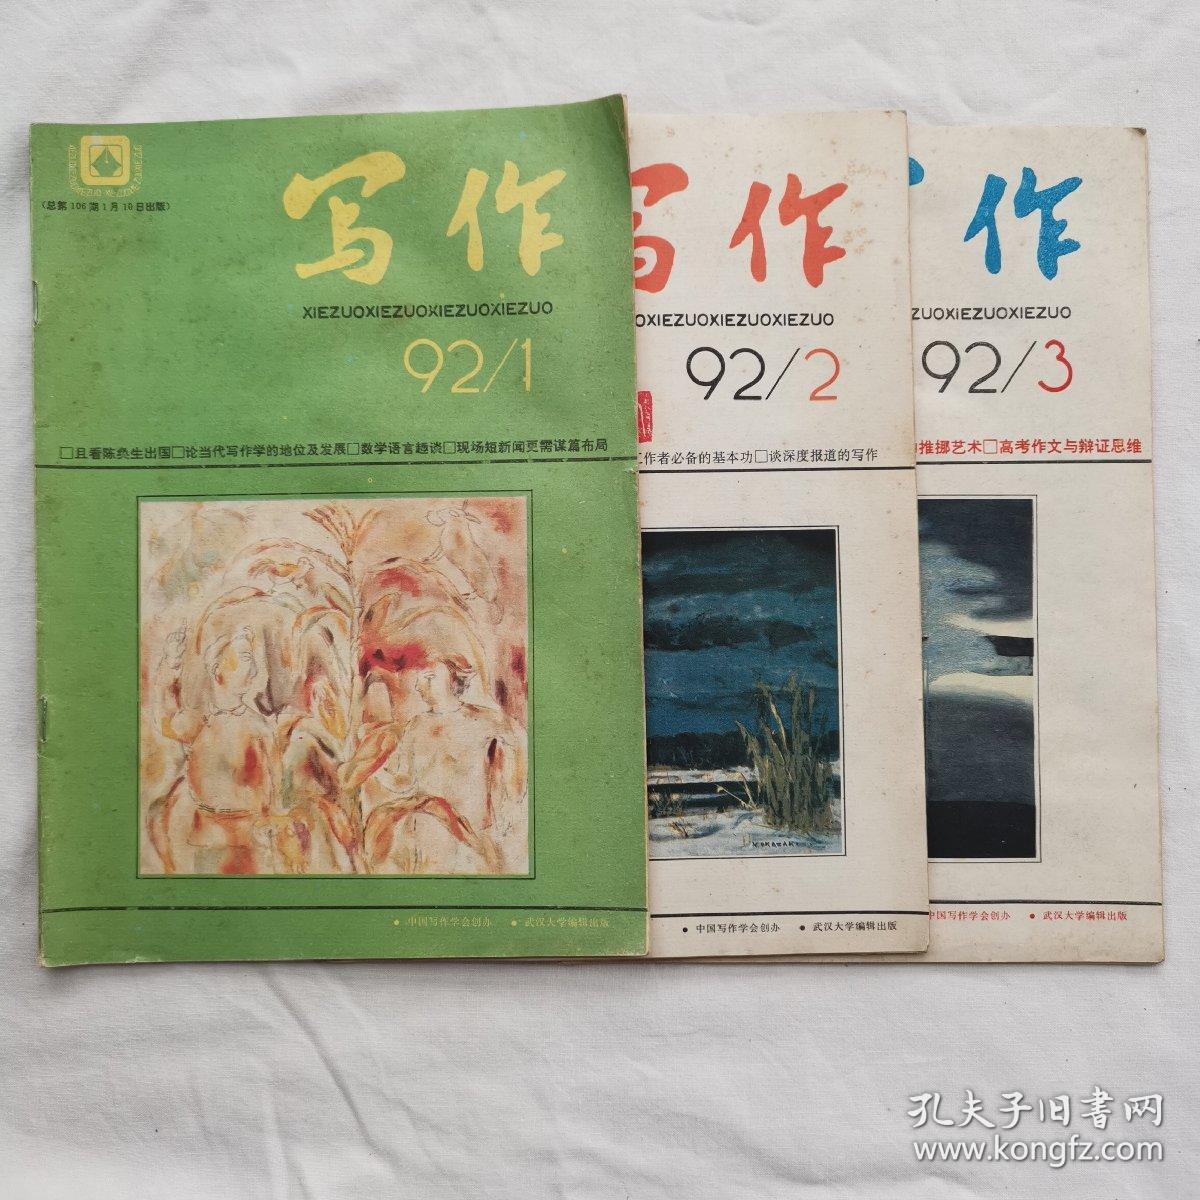 写作 1992年 1  
写作 1992年 2
写作 1992年 3  3 本合售
中国写作学会创办 武汉大学编辑出版